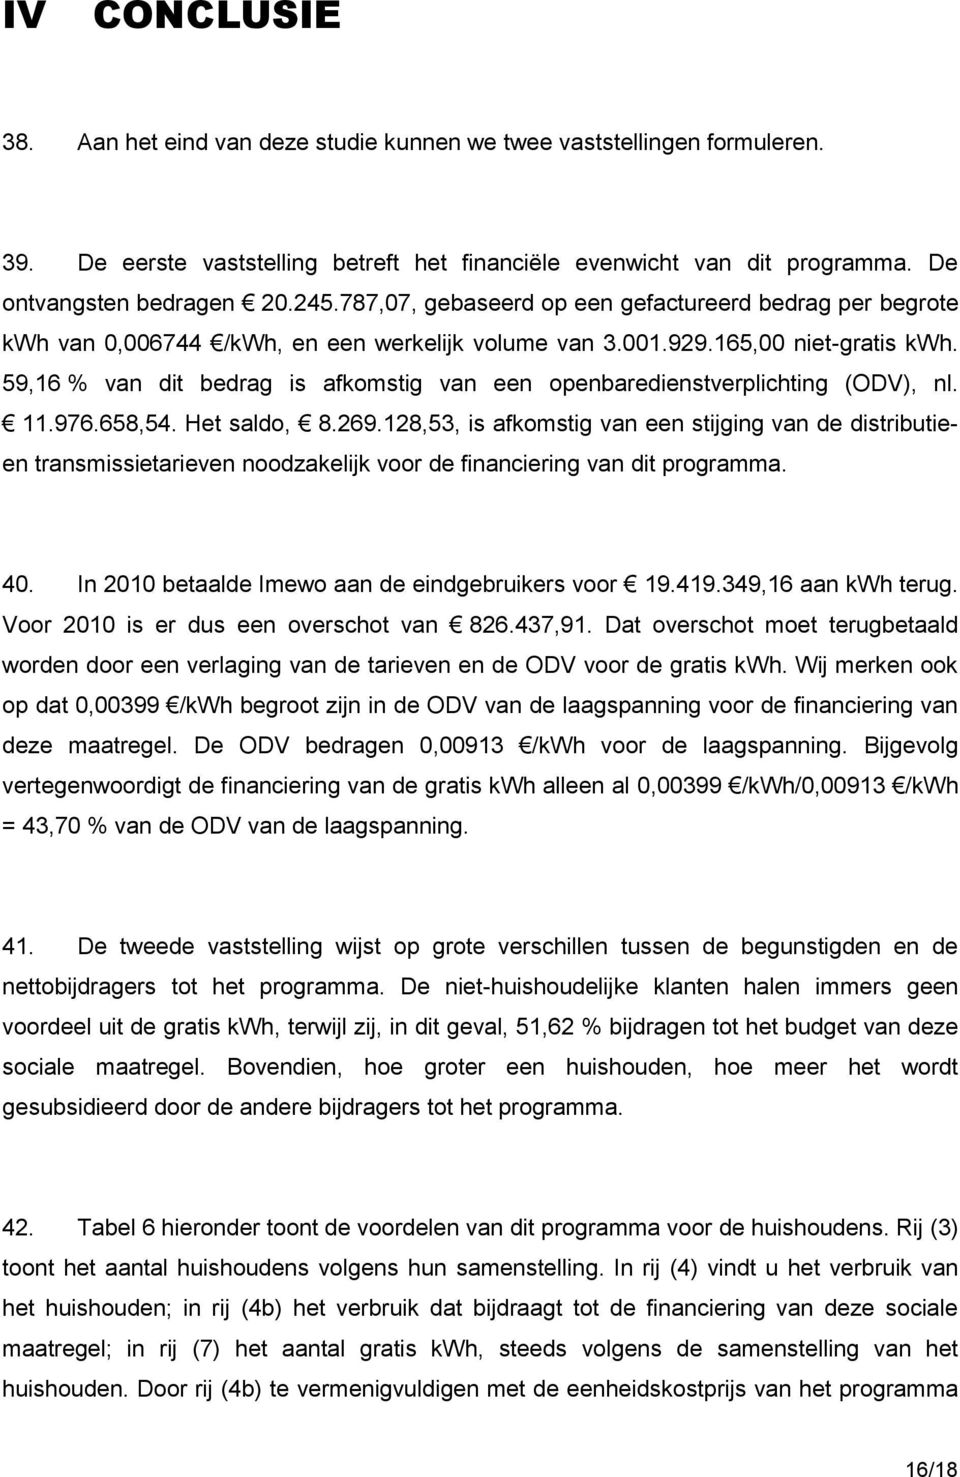 59,16 % van dit bedrag is afkomstig van een openbaredienstverplichting (ODV), nl. 11.976.658,54. Het saldo, 8.269.